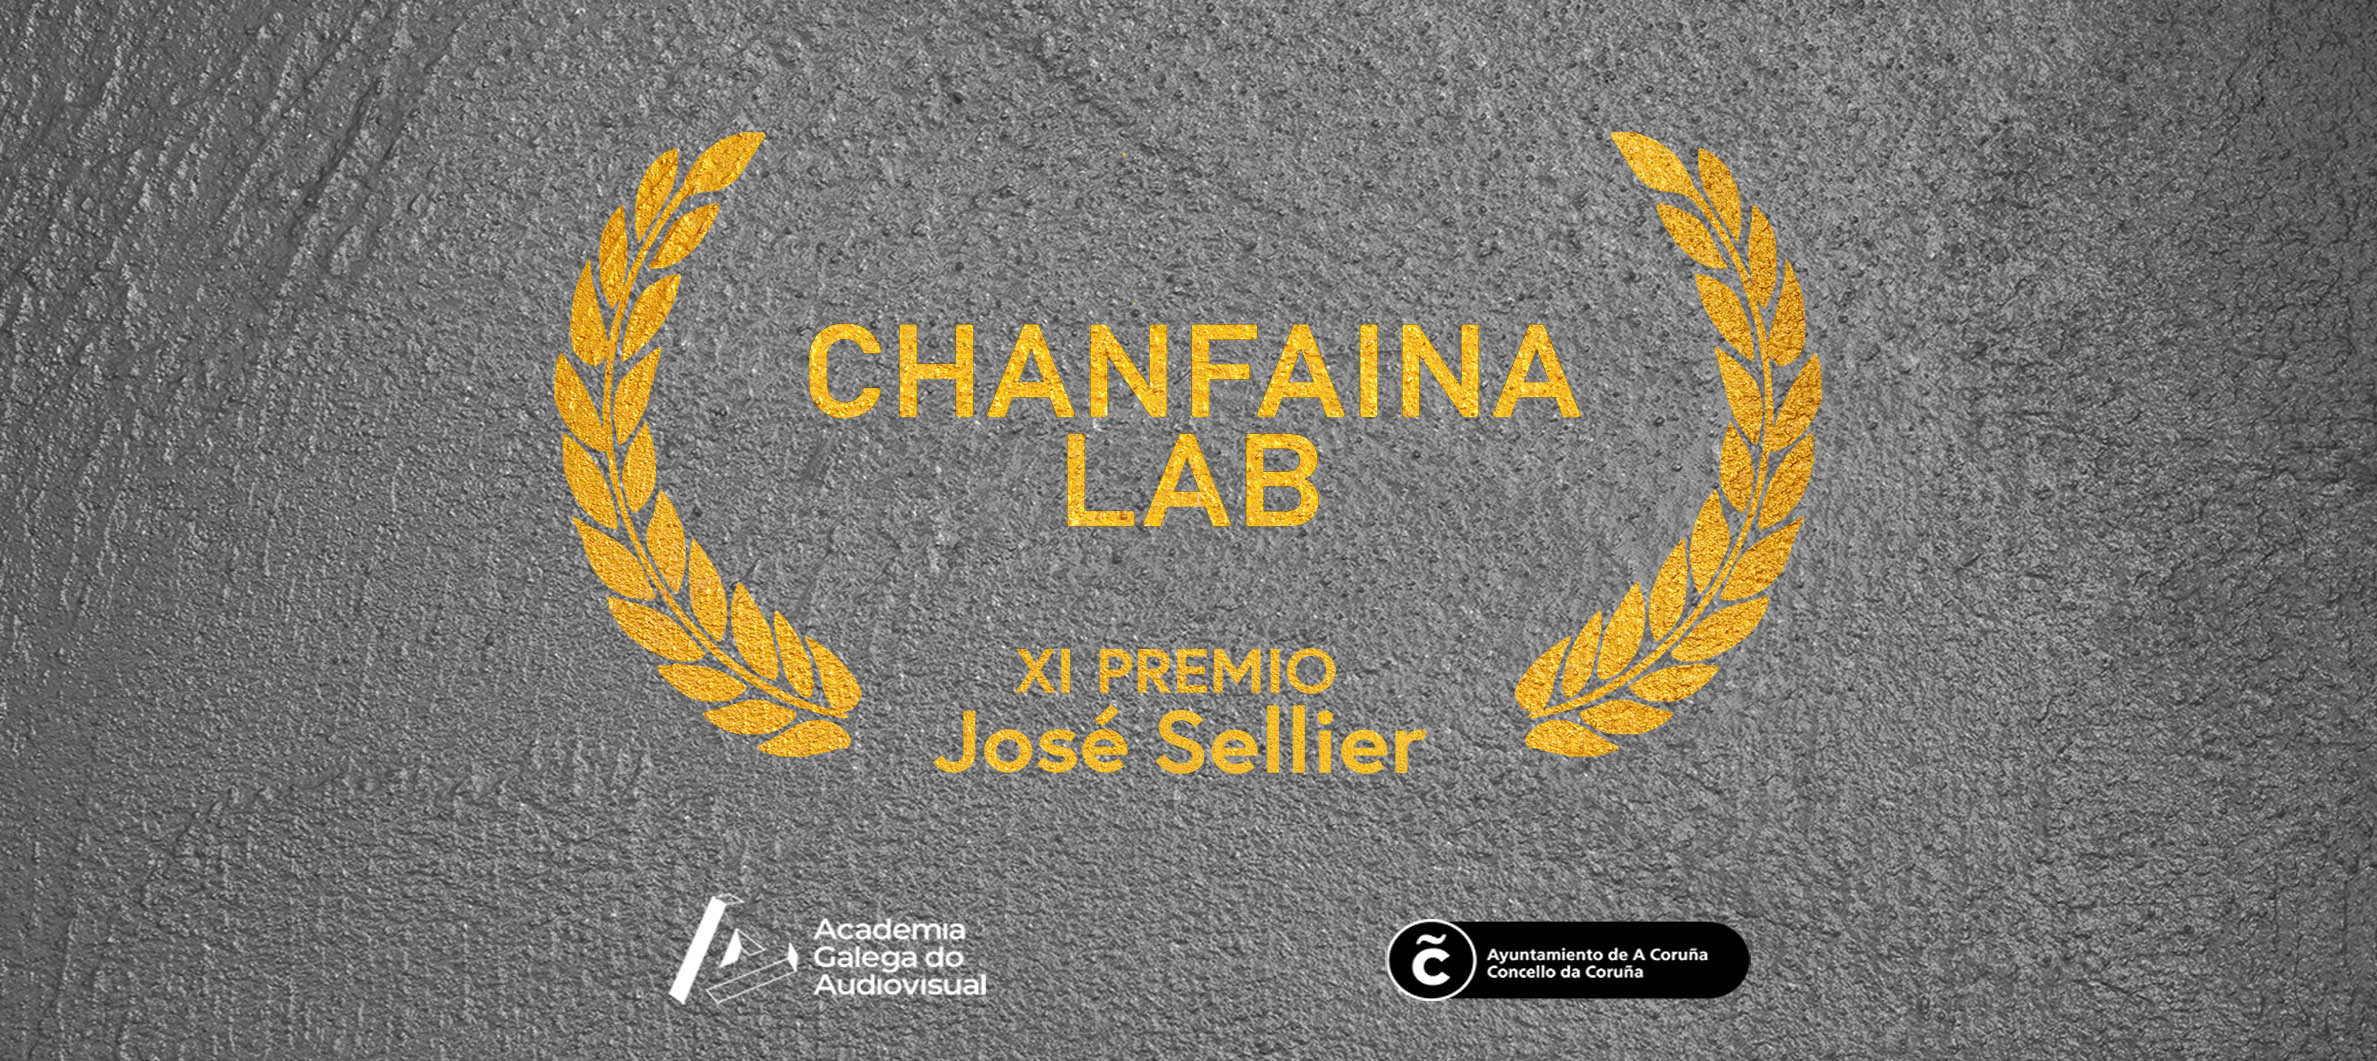 El Chanfaina Lab, XI Premio José Sellier